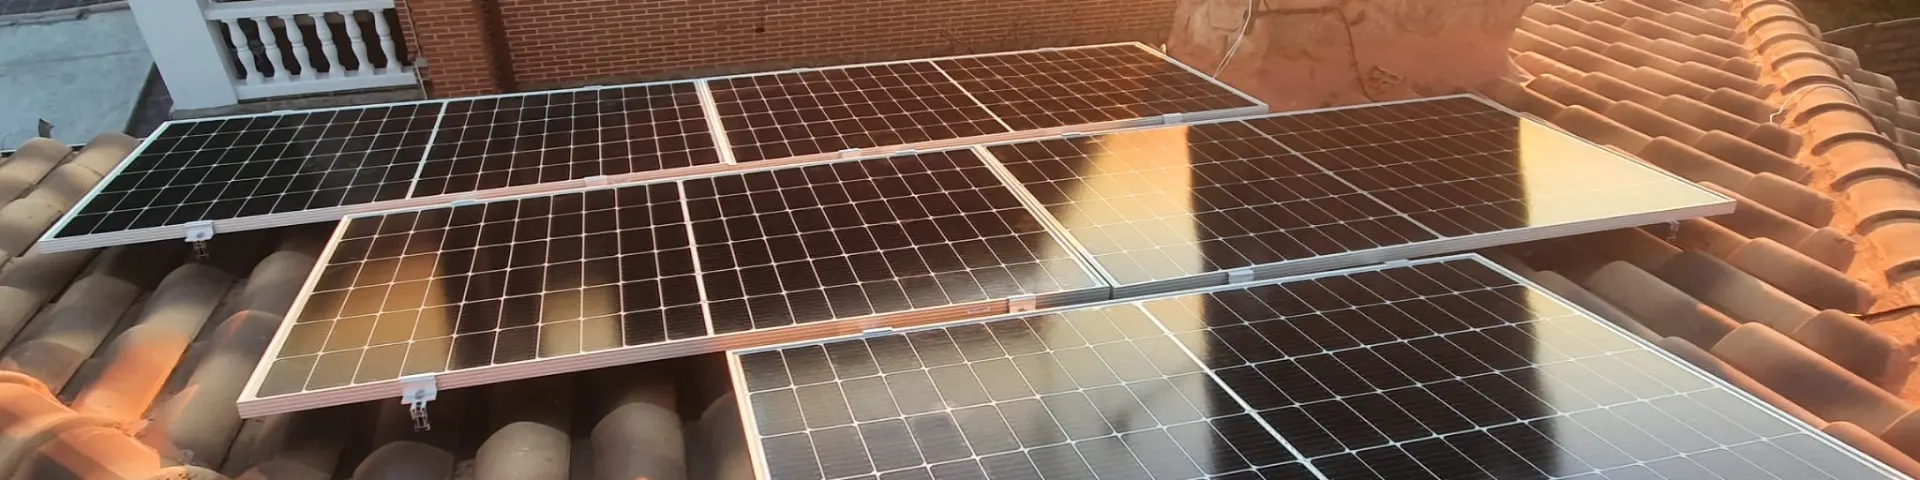 instalacion placas solares